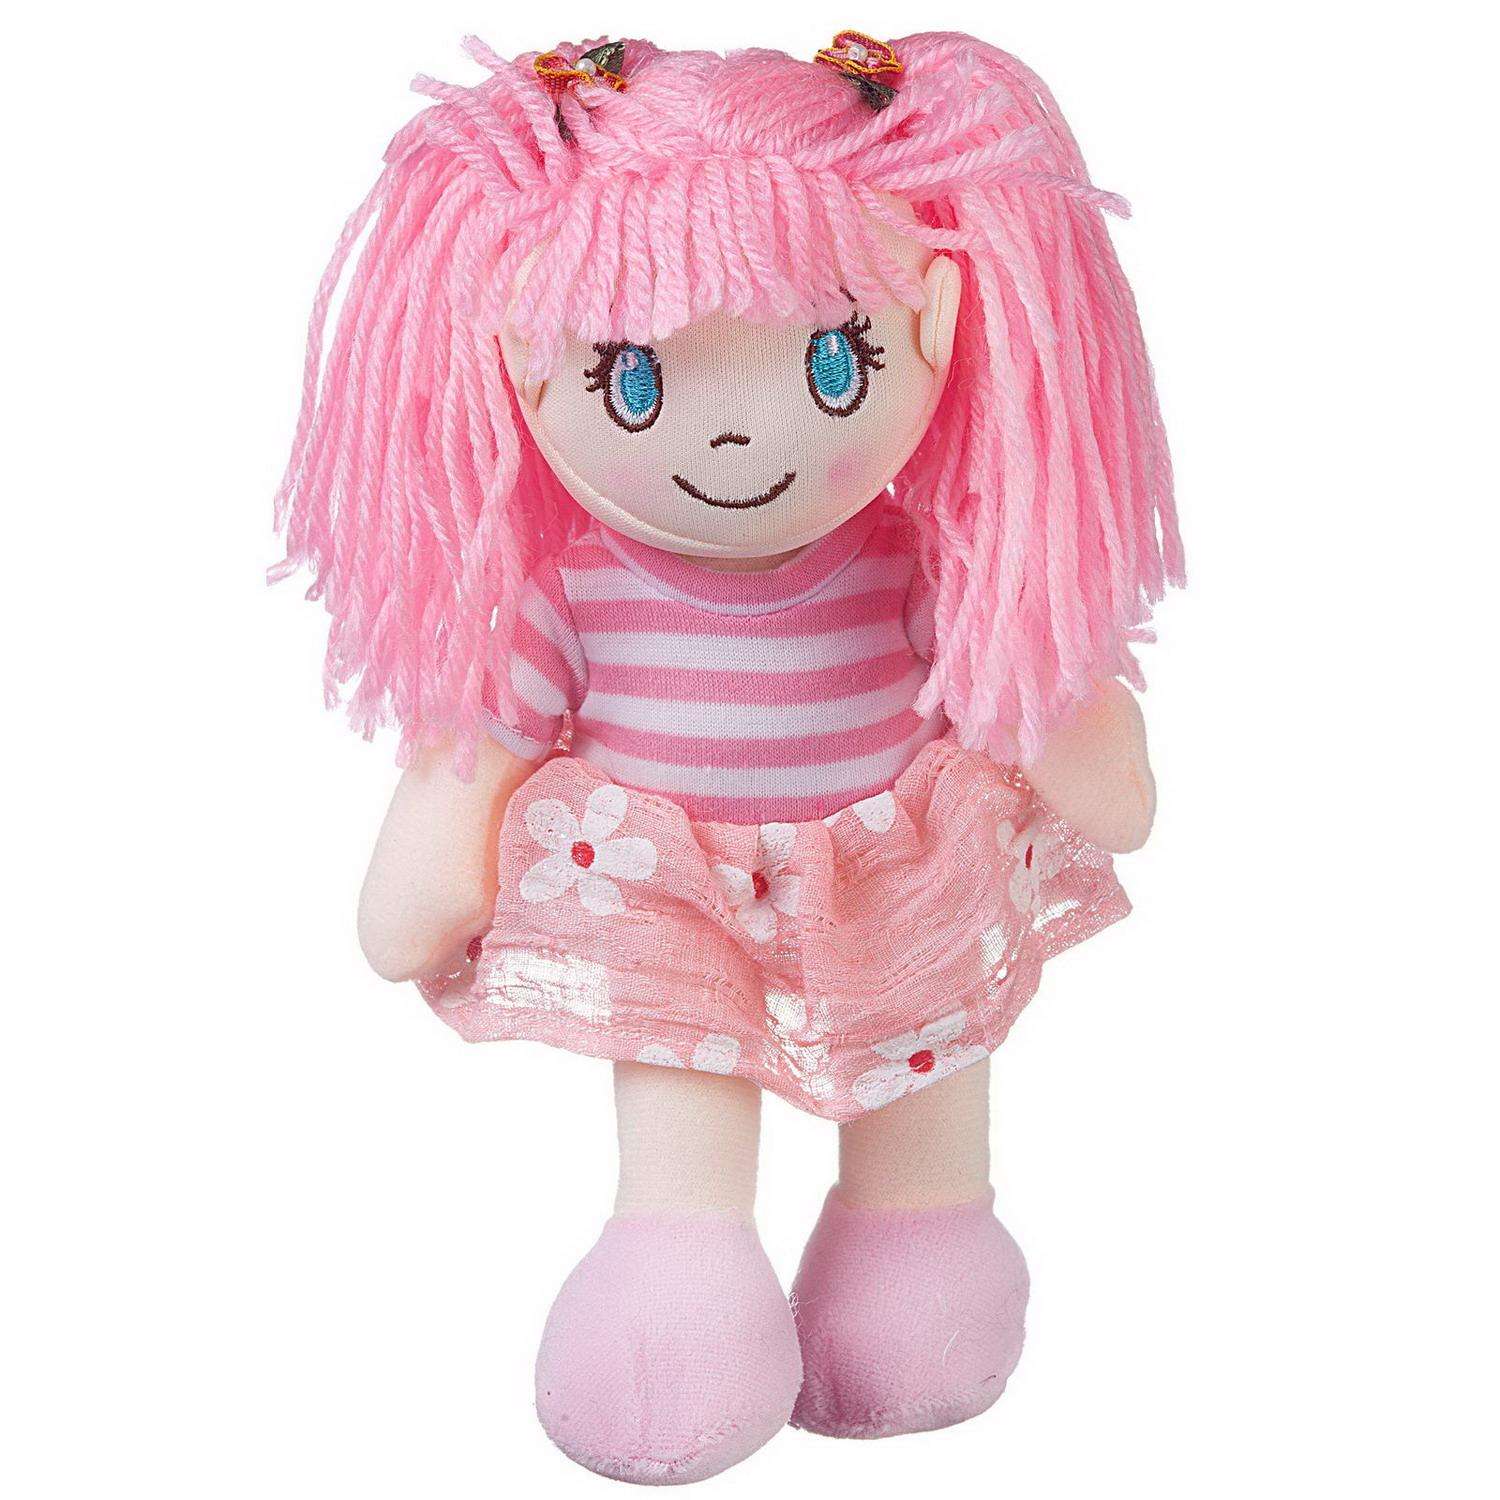 Кукла ABTOYS Мягкое сердце мягконабивная в розовом платье 20 см M6032 - фото 1